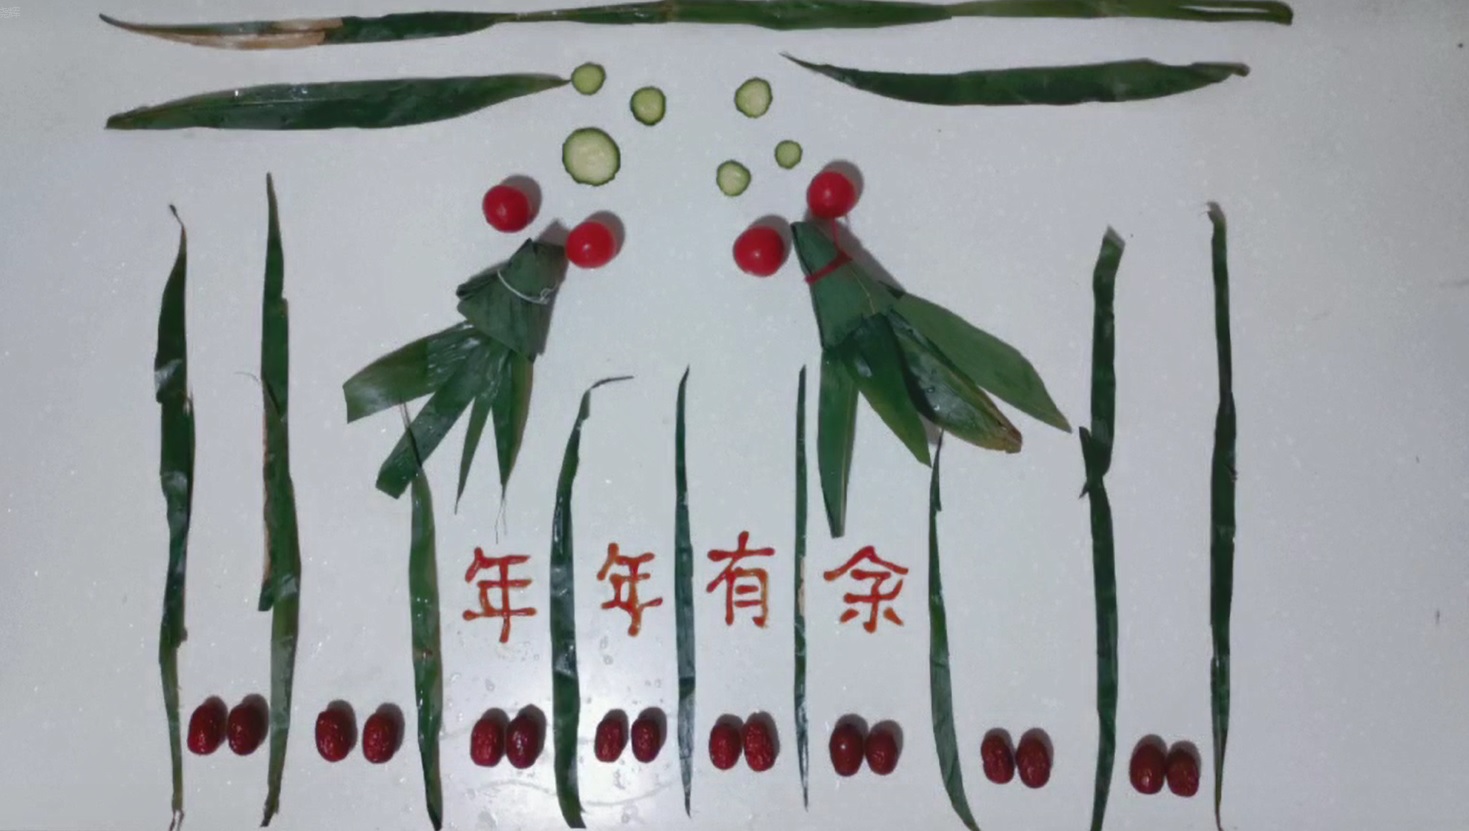 张晓辉老师用粽子摆出“年年有余”创意图案。粽子包含了中华传统,也使教职工能在包粽子中感受节日的快乐,体味美好生活。